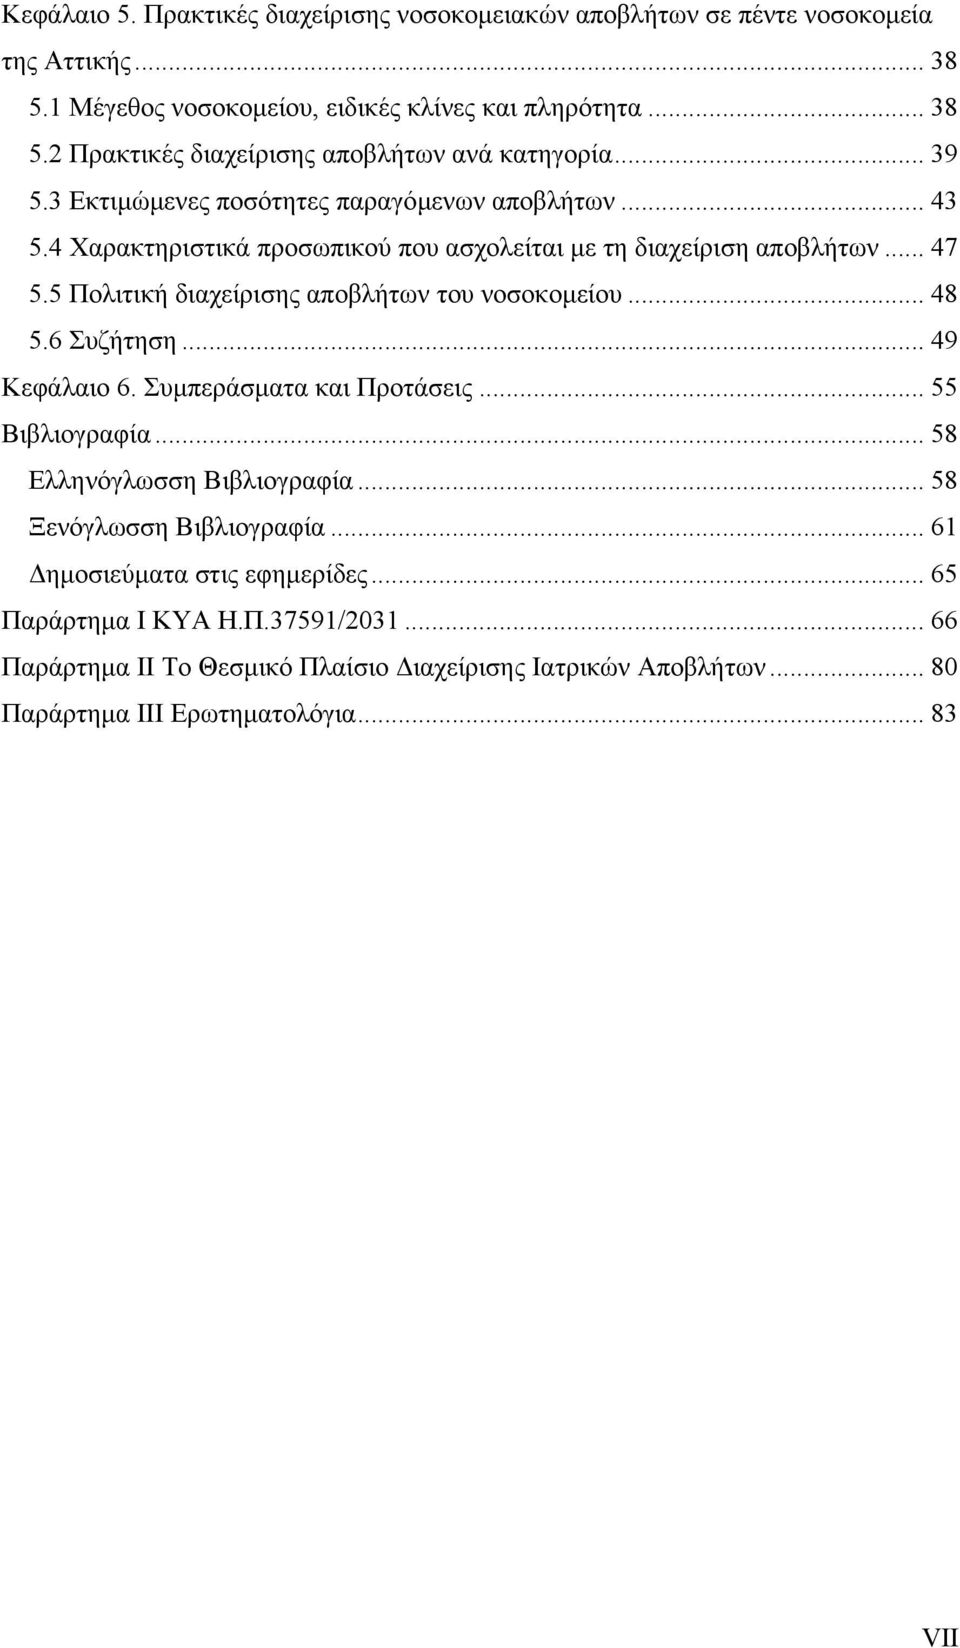 5 Πολιτική διαχείρισης αποβλήτων του νοσοκοµείου... 48 5.6 Συζήτηση... 49 Κεφάλαιο 6. Συµπεράσµατα και Προτάσεις... 55 Βιβλιογραφία... 58 Ελληνόγλωσση Βιβλιογραφία.